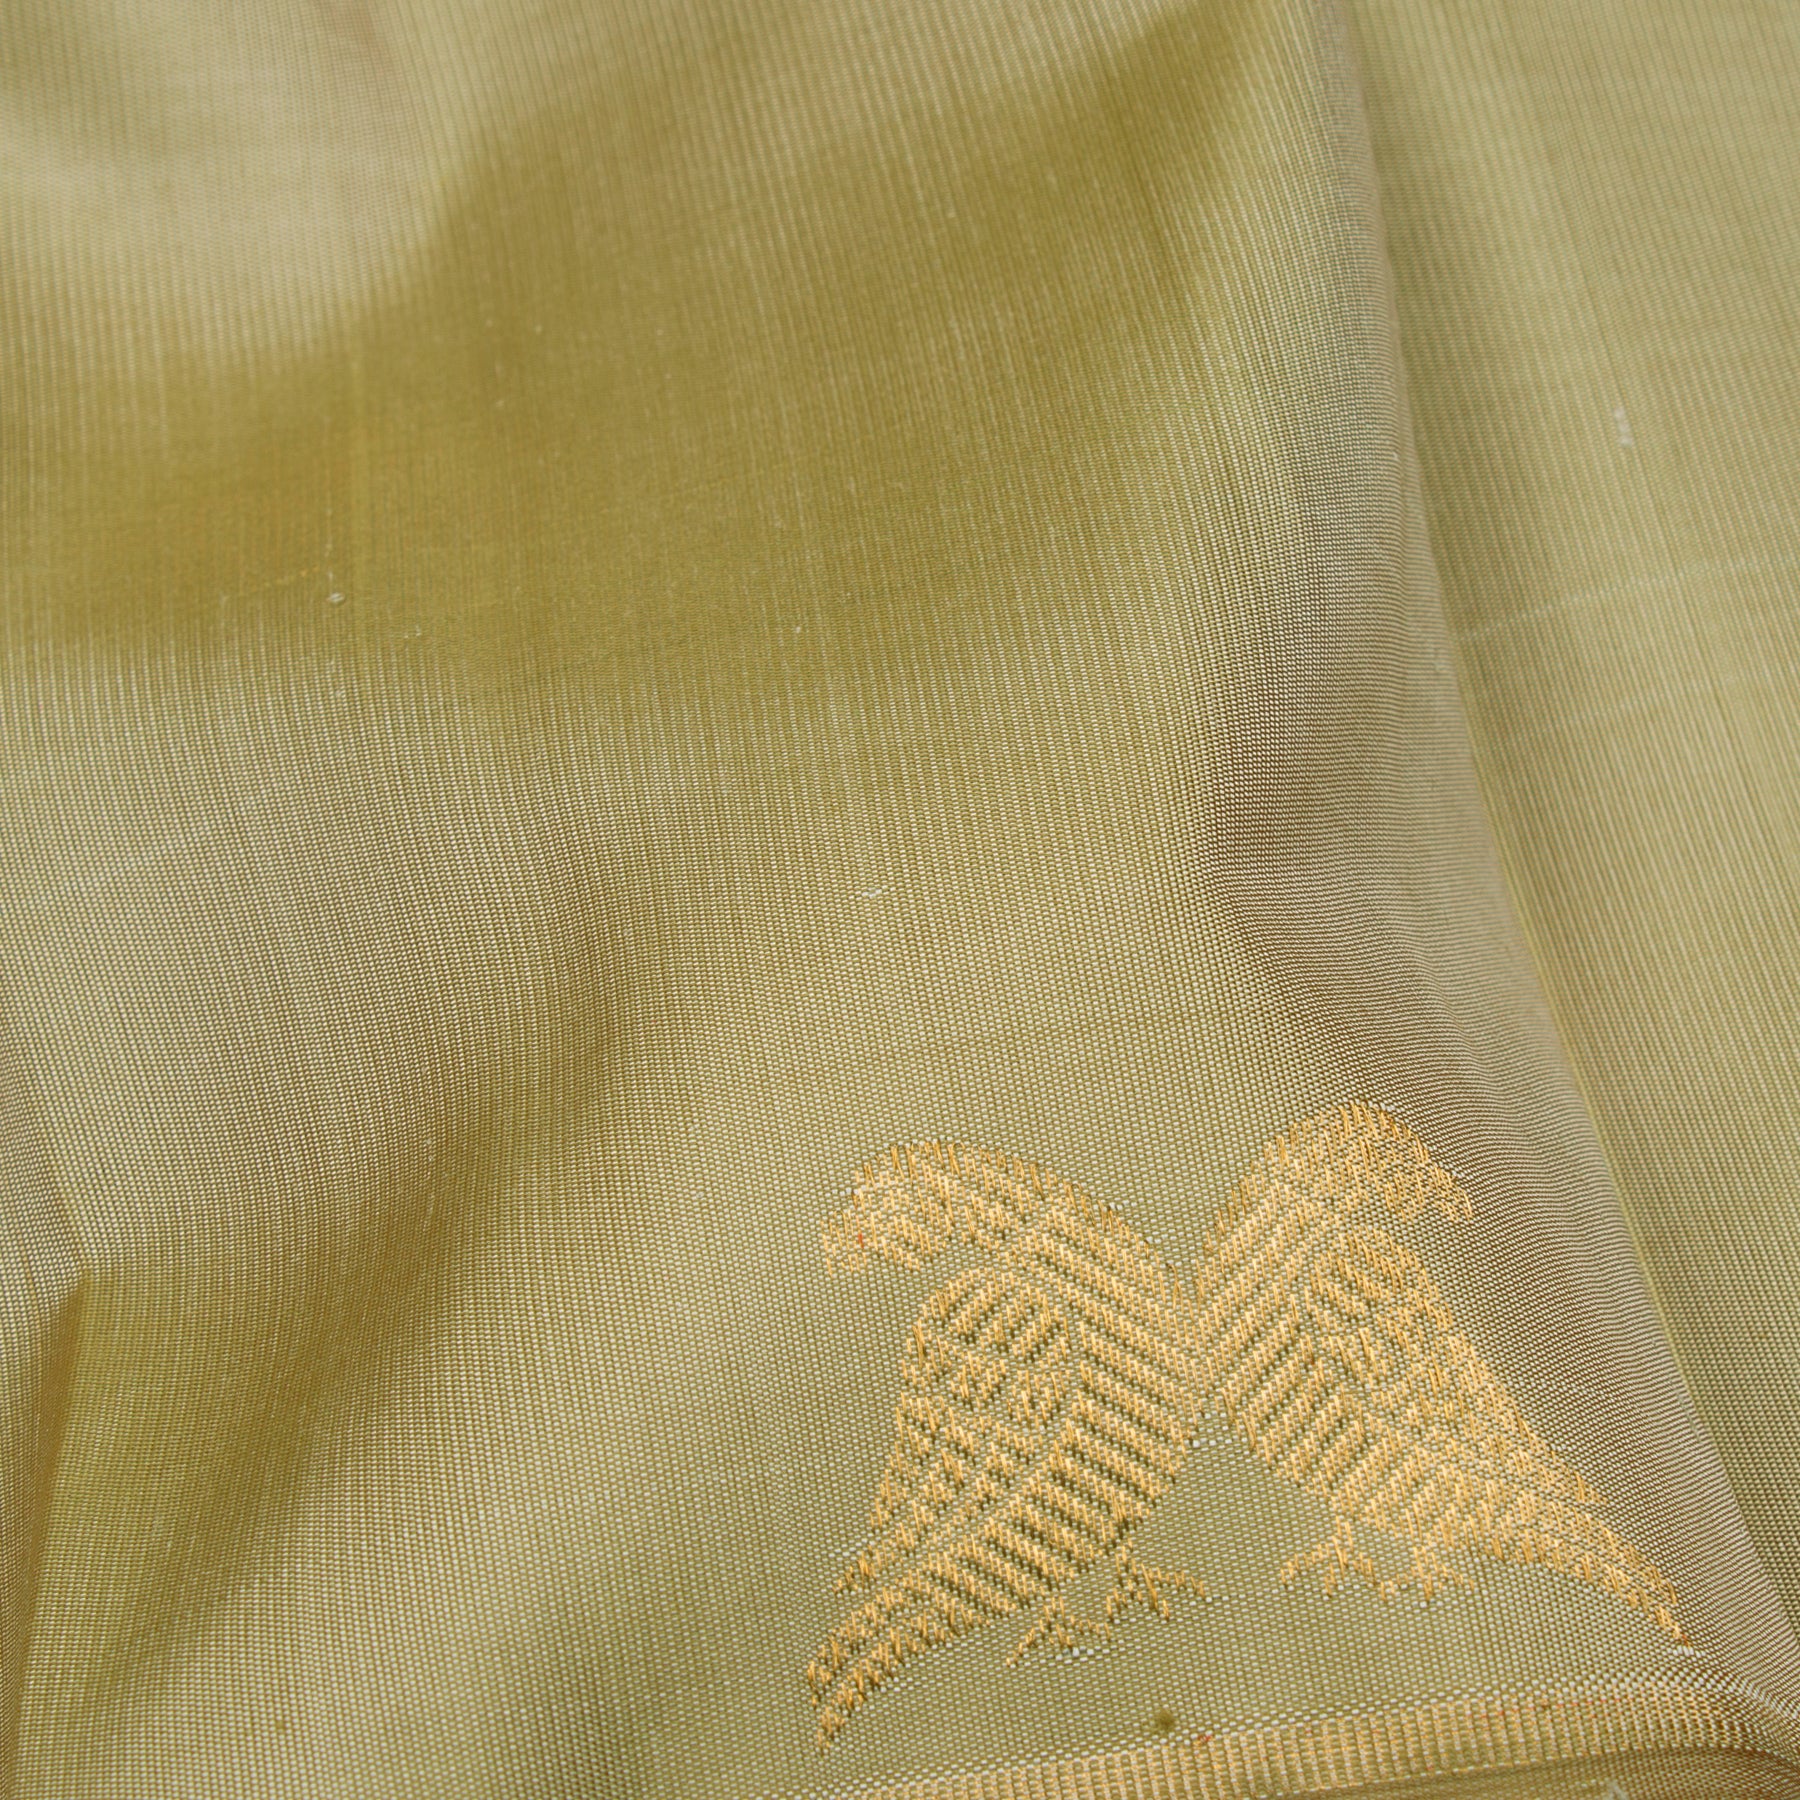 Kanakavalli Kanjivaram Silk Sari 23-599-HS001-12588 - Fabric View